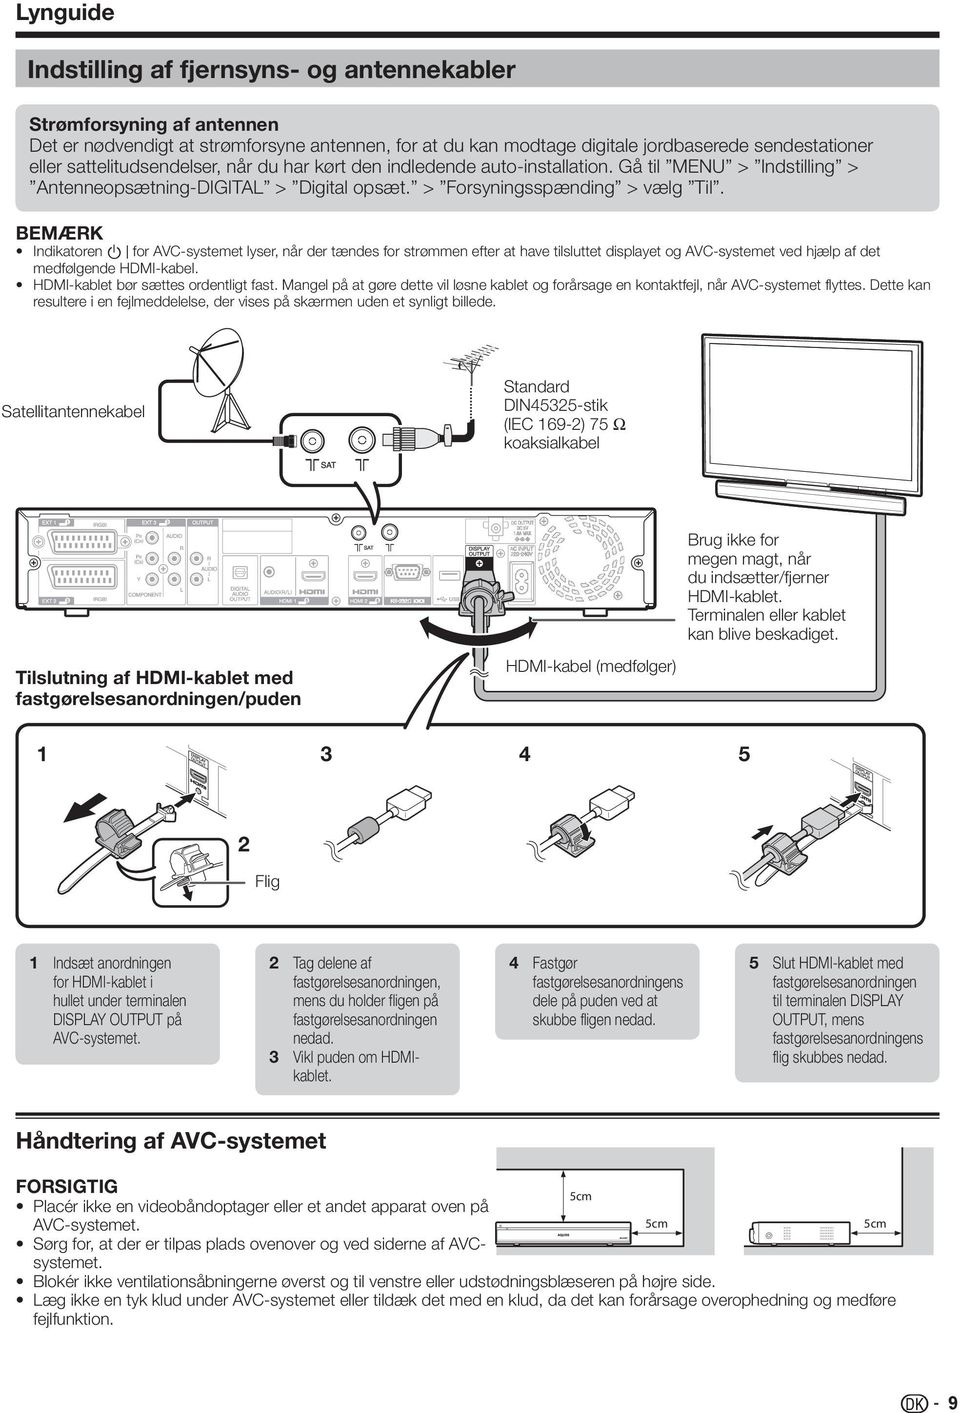 Indikatoren B for AVC-systemet lyser, når der tændes for strømmen efter at have tilsluttet displayet og AVC-systemet ved hjælp af det medfølgende HDMI-kabel. HDMI-kablet bør sættes ordentligt fast.